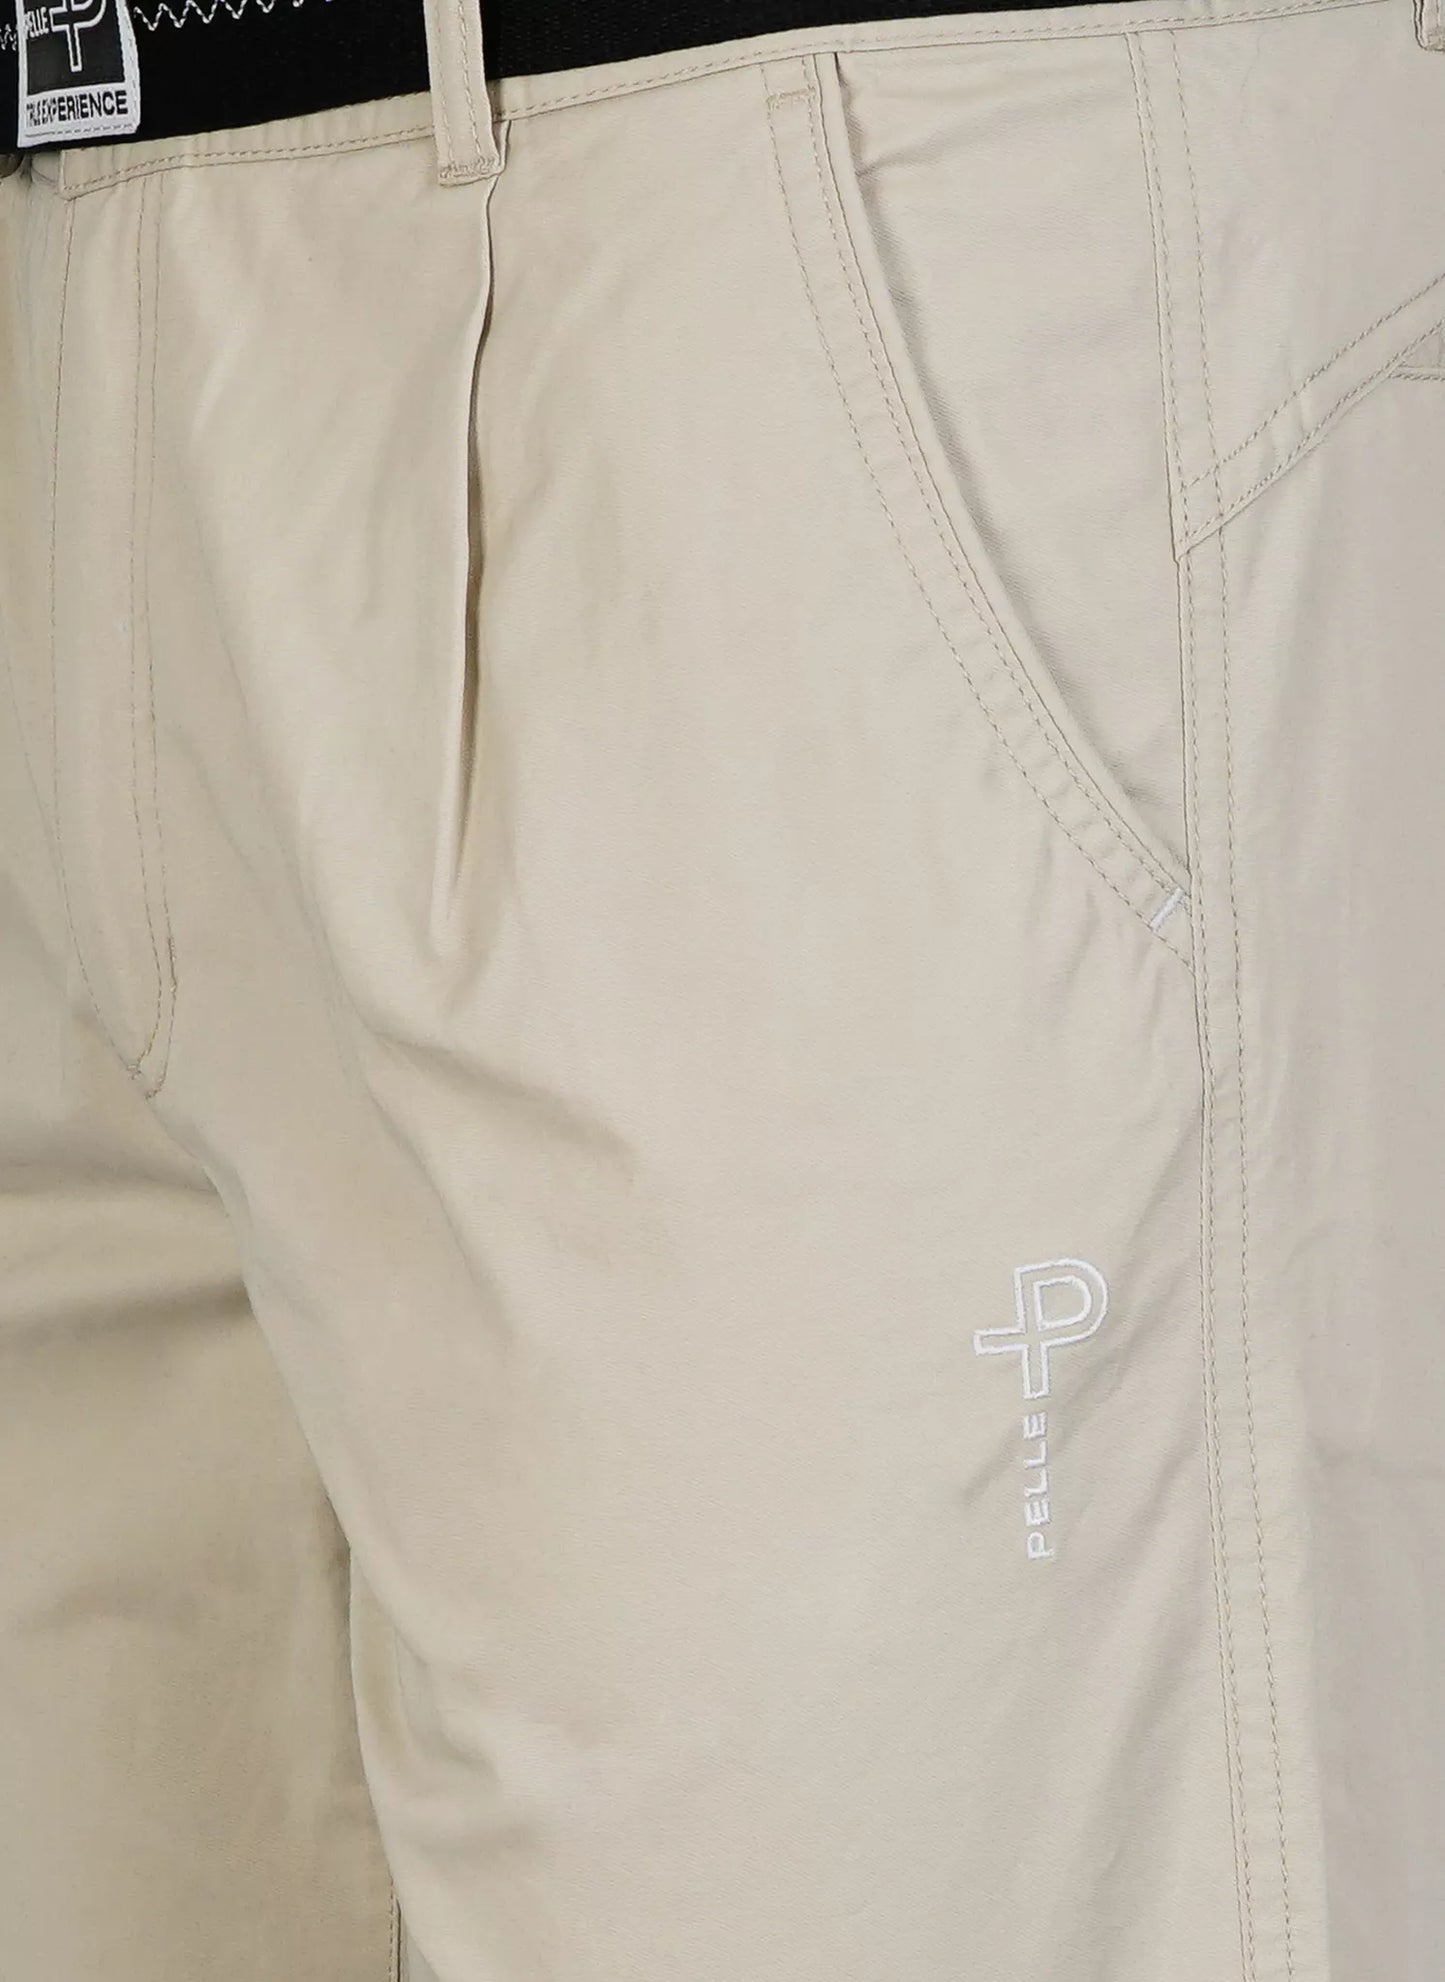 Pelle P Fast Dry Shorts -  Lt. Beige Oak